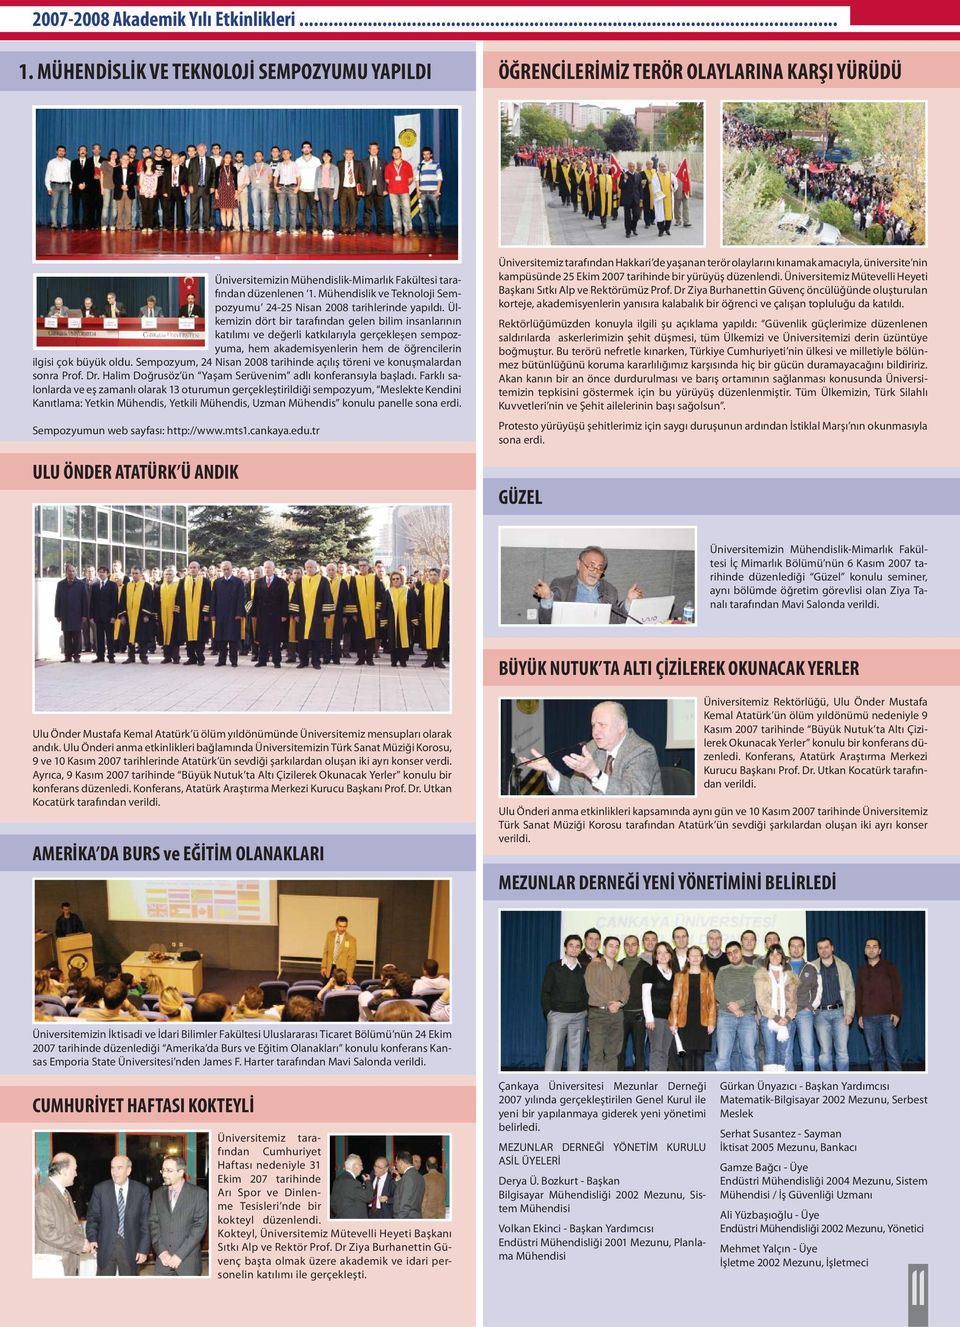 Mühendislik ve Teknoloji Sempozyumu 2-25 Nisan 2008 tarihlerinde yapıldı.